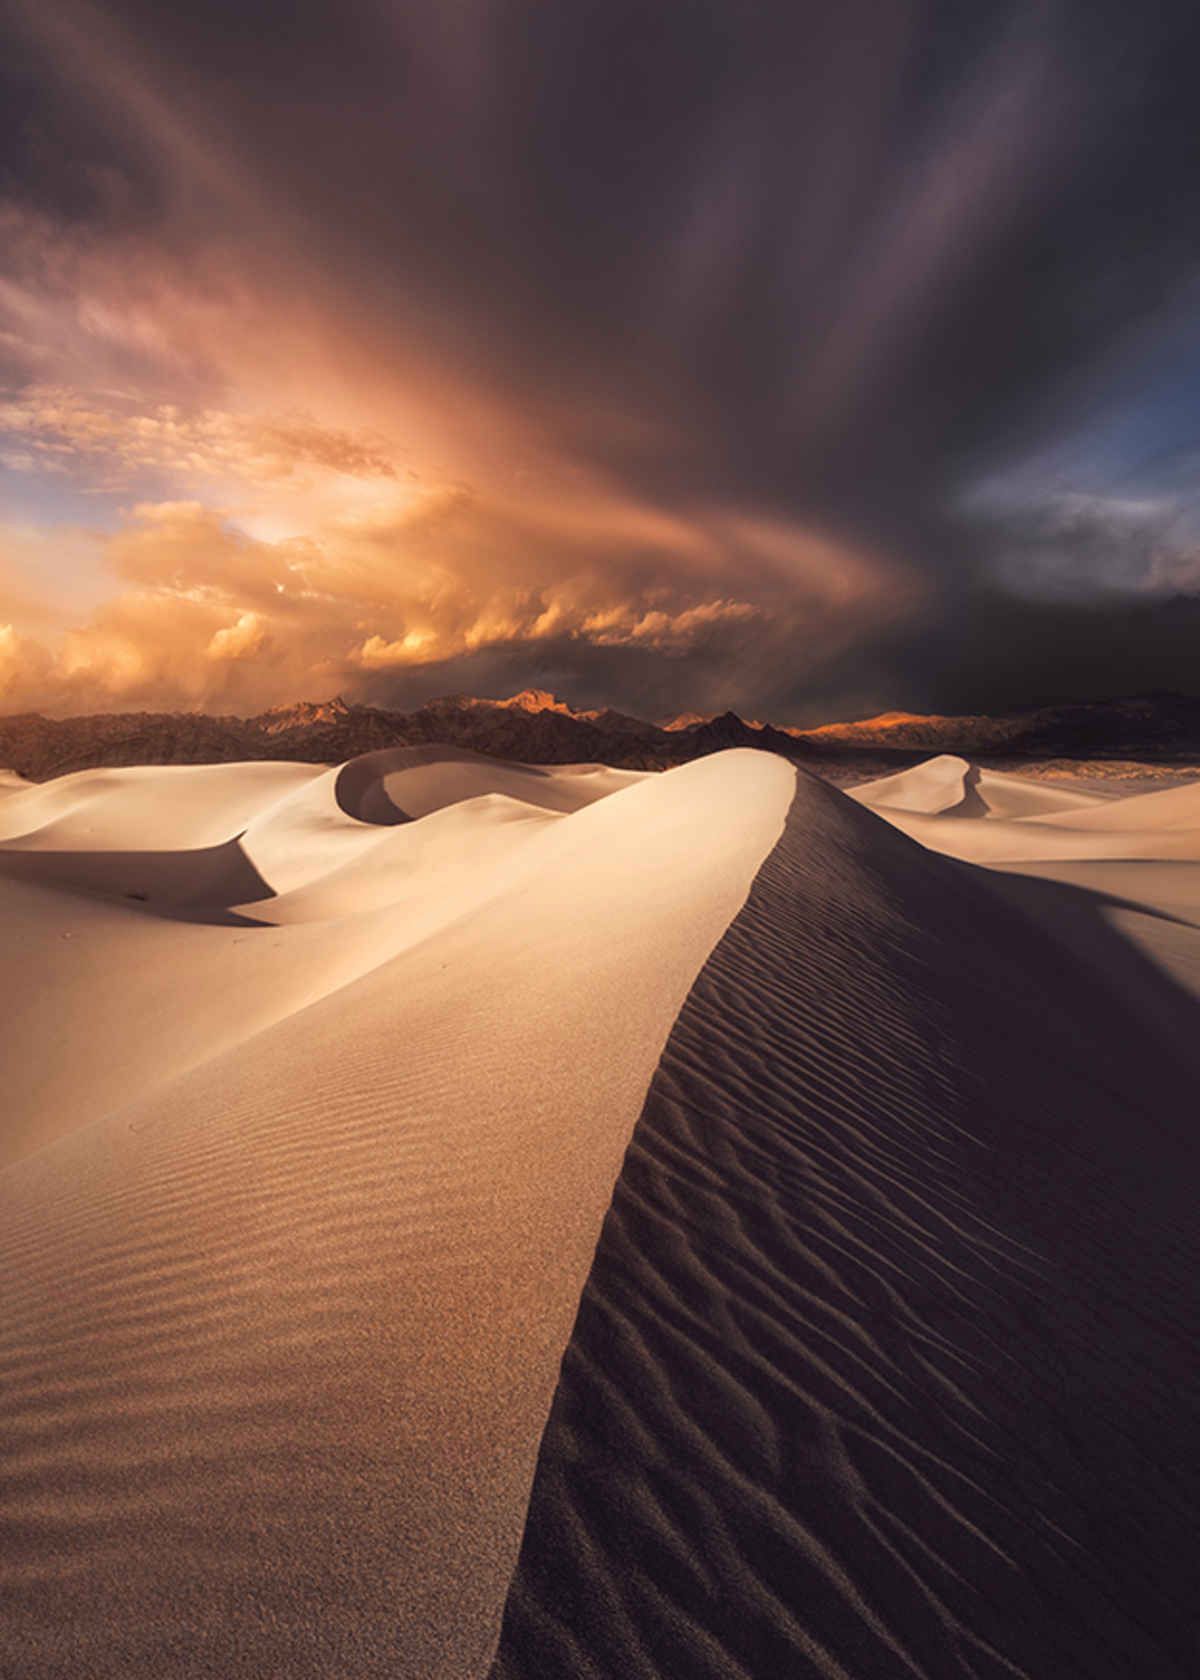 Zwycięzcą w kategorii dorosłych został Ted Gore, który sfotografował wydmy w Parku Narodowym Death Valley w Kalifornii. W nagrodę otrzyma 5000 dolarów oraz publikację w magazynach USA Today i Popphoto.com.